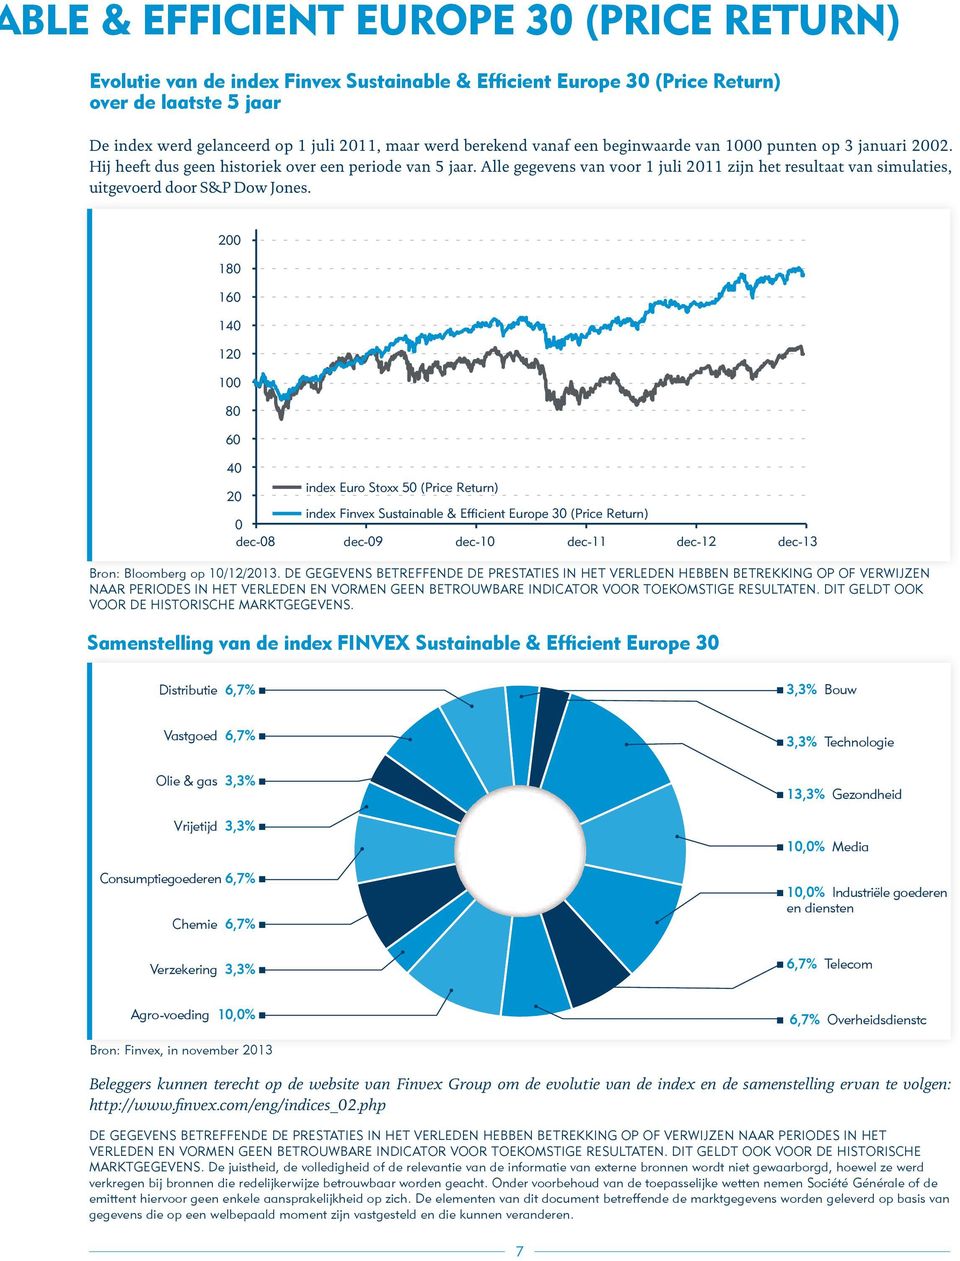 Alle gegevens van voor 1 juli 2011 zijn het resultaat van simulaties, uitgevoerd door S&P Dow Jones.